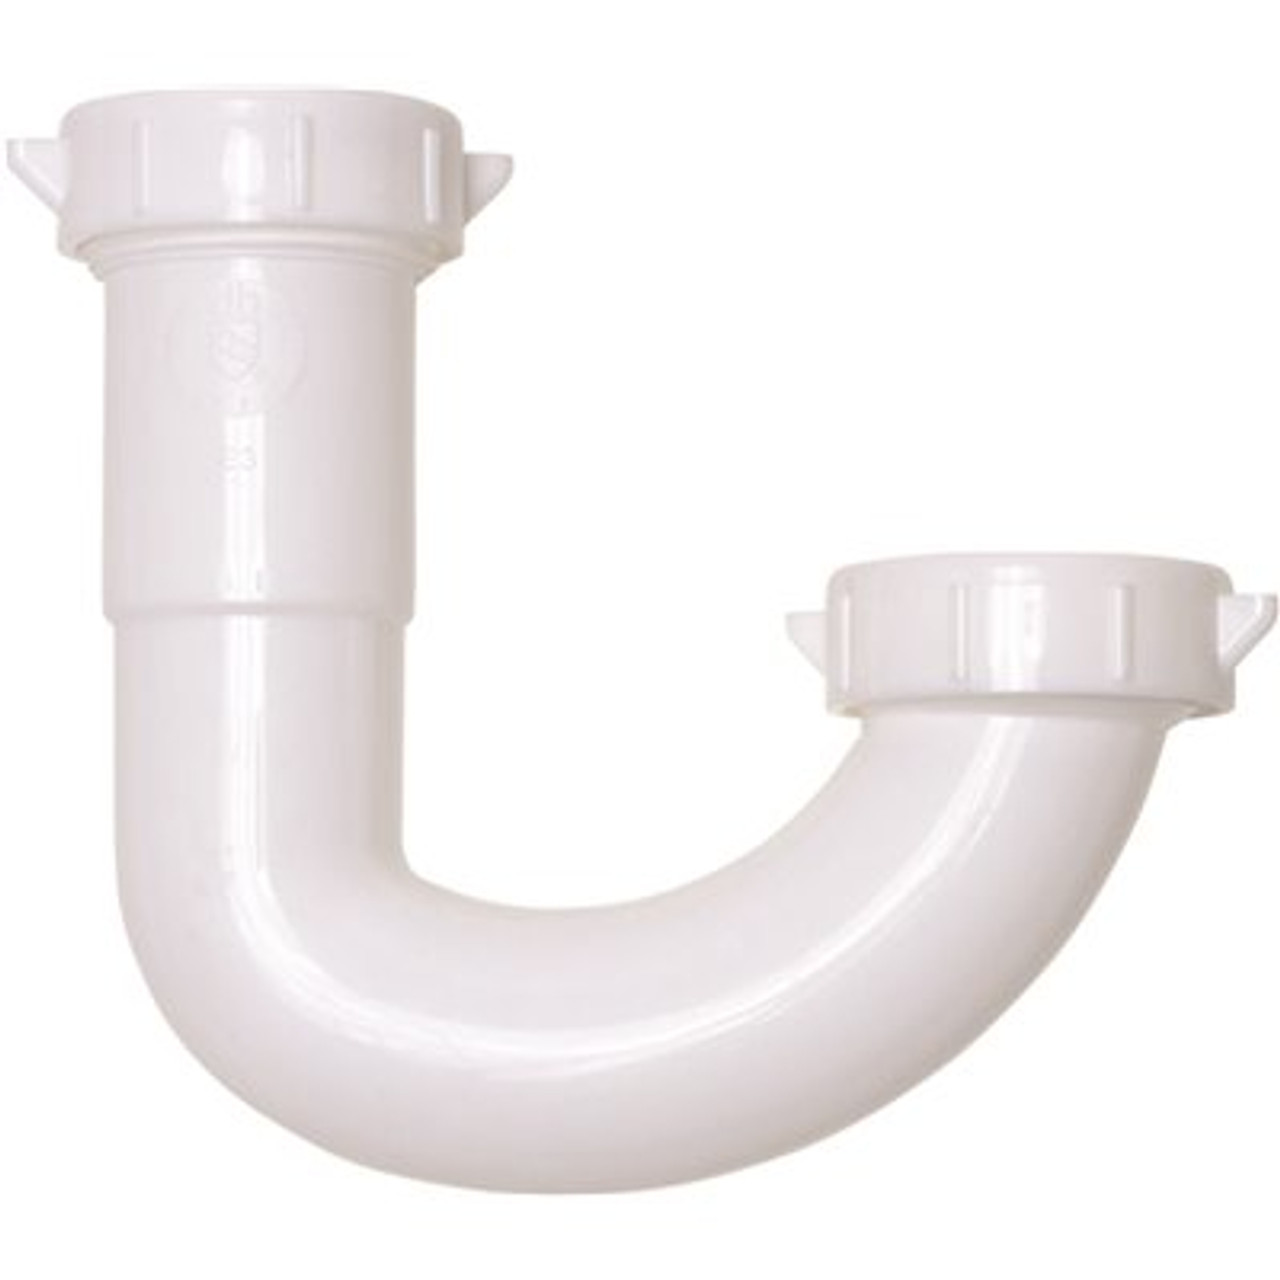 Oatey 1-1/4 In. White Plastic Sink Drain J-Bend P- Trap